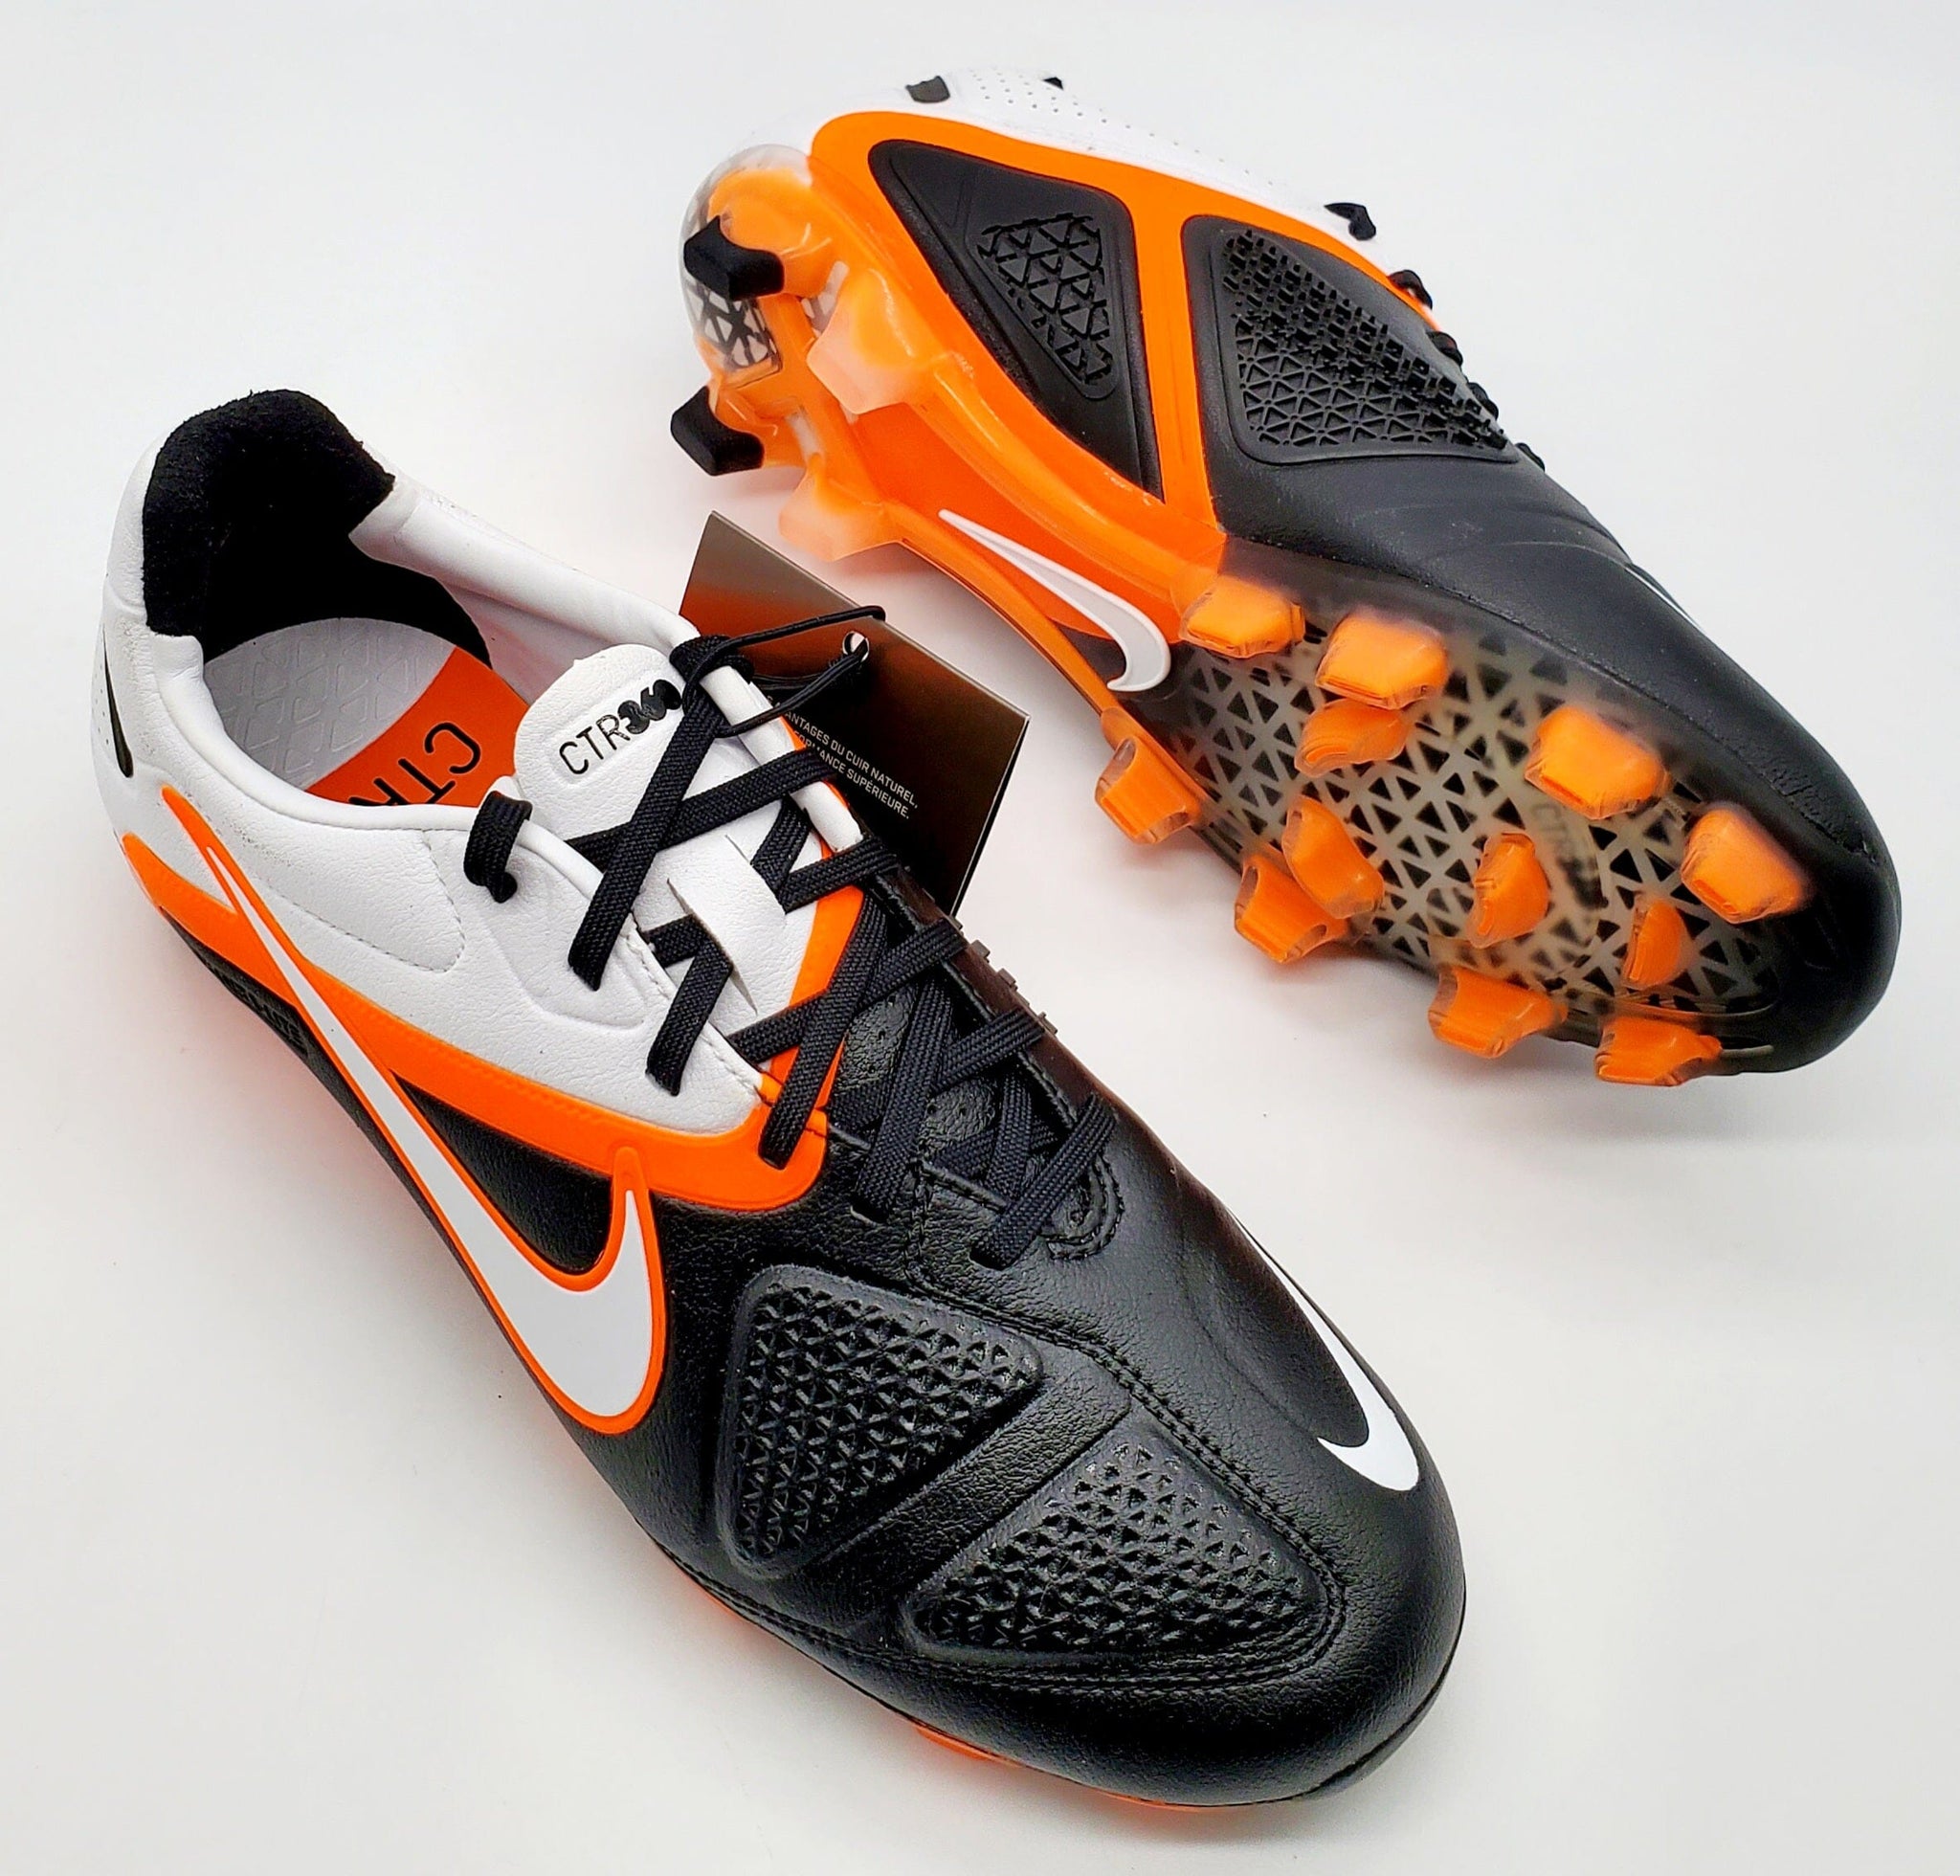 Nike Ctr360 Maestri II FG Classic Football Boots Ltd